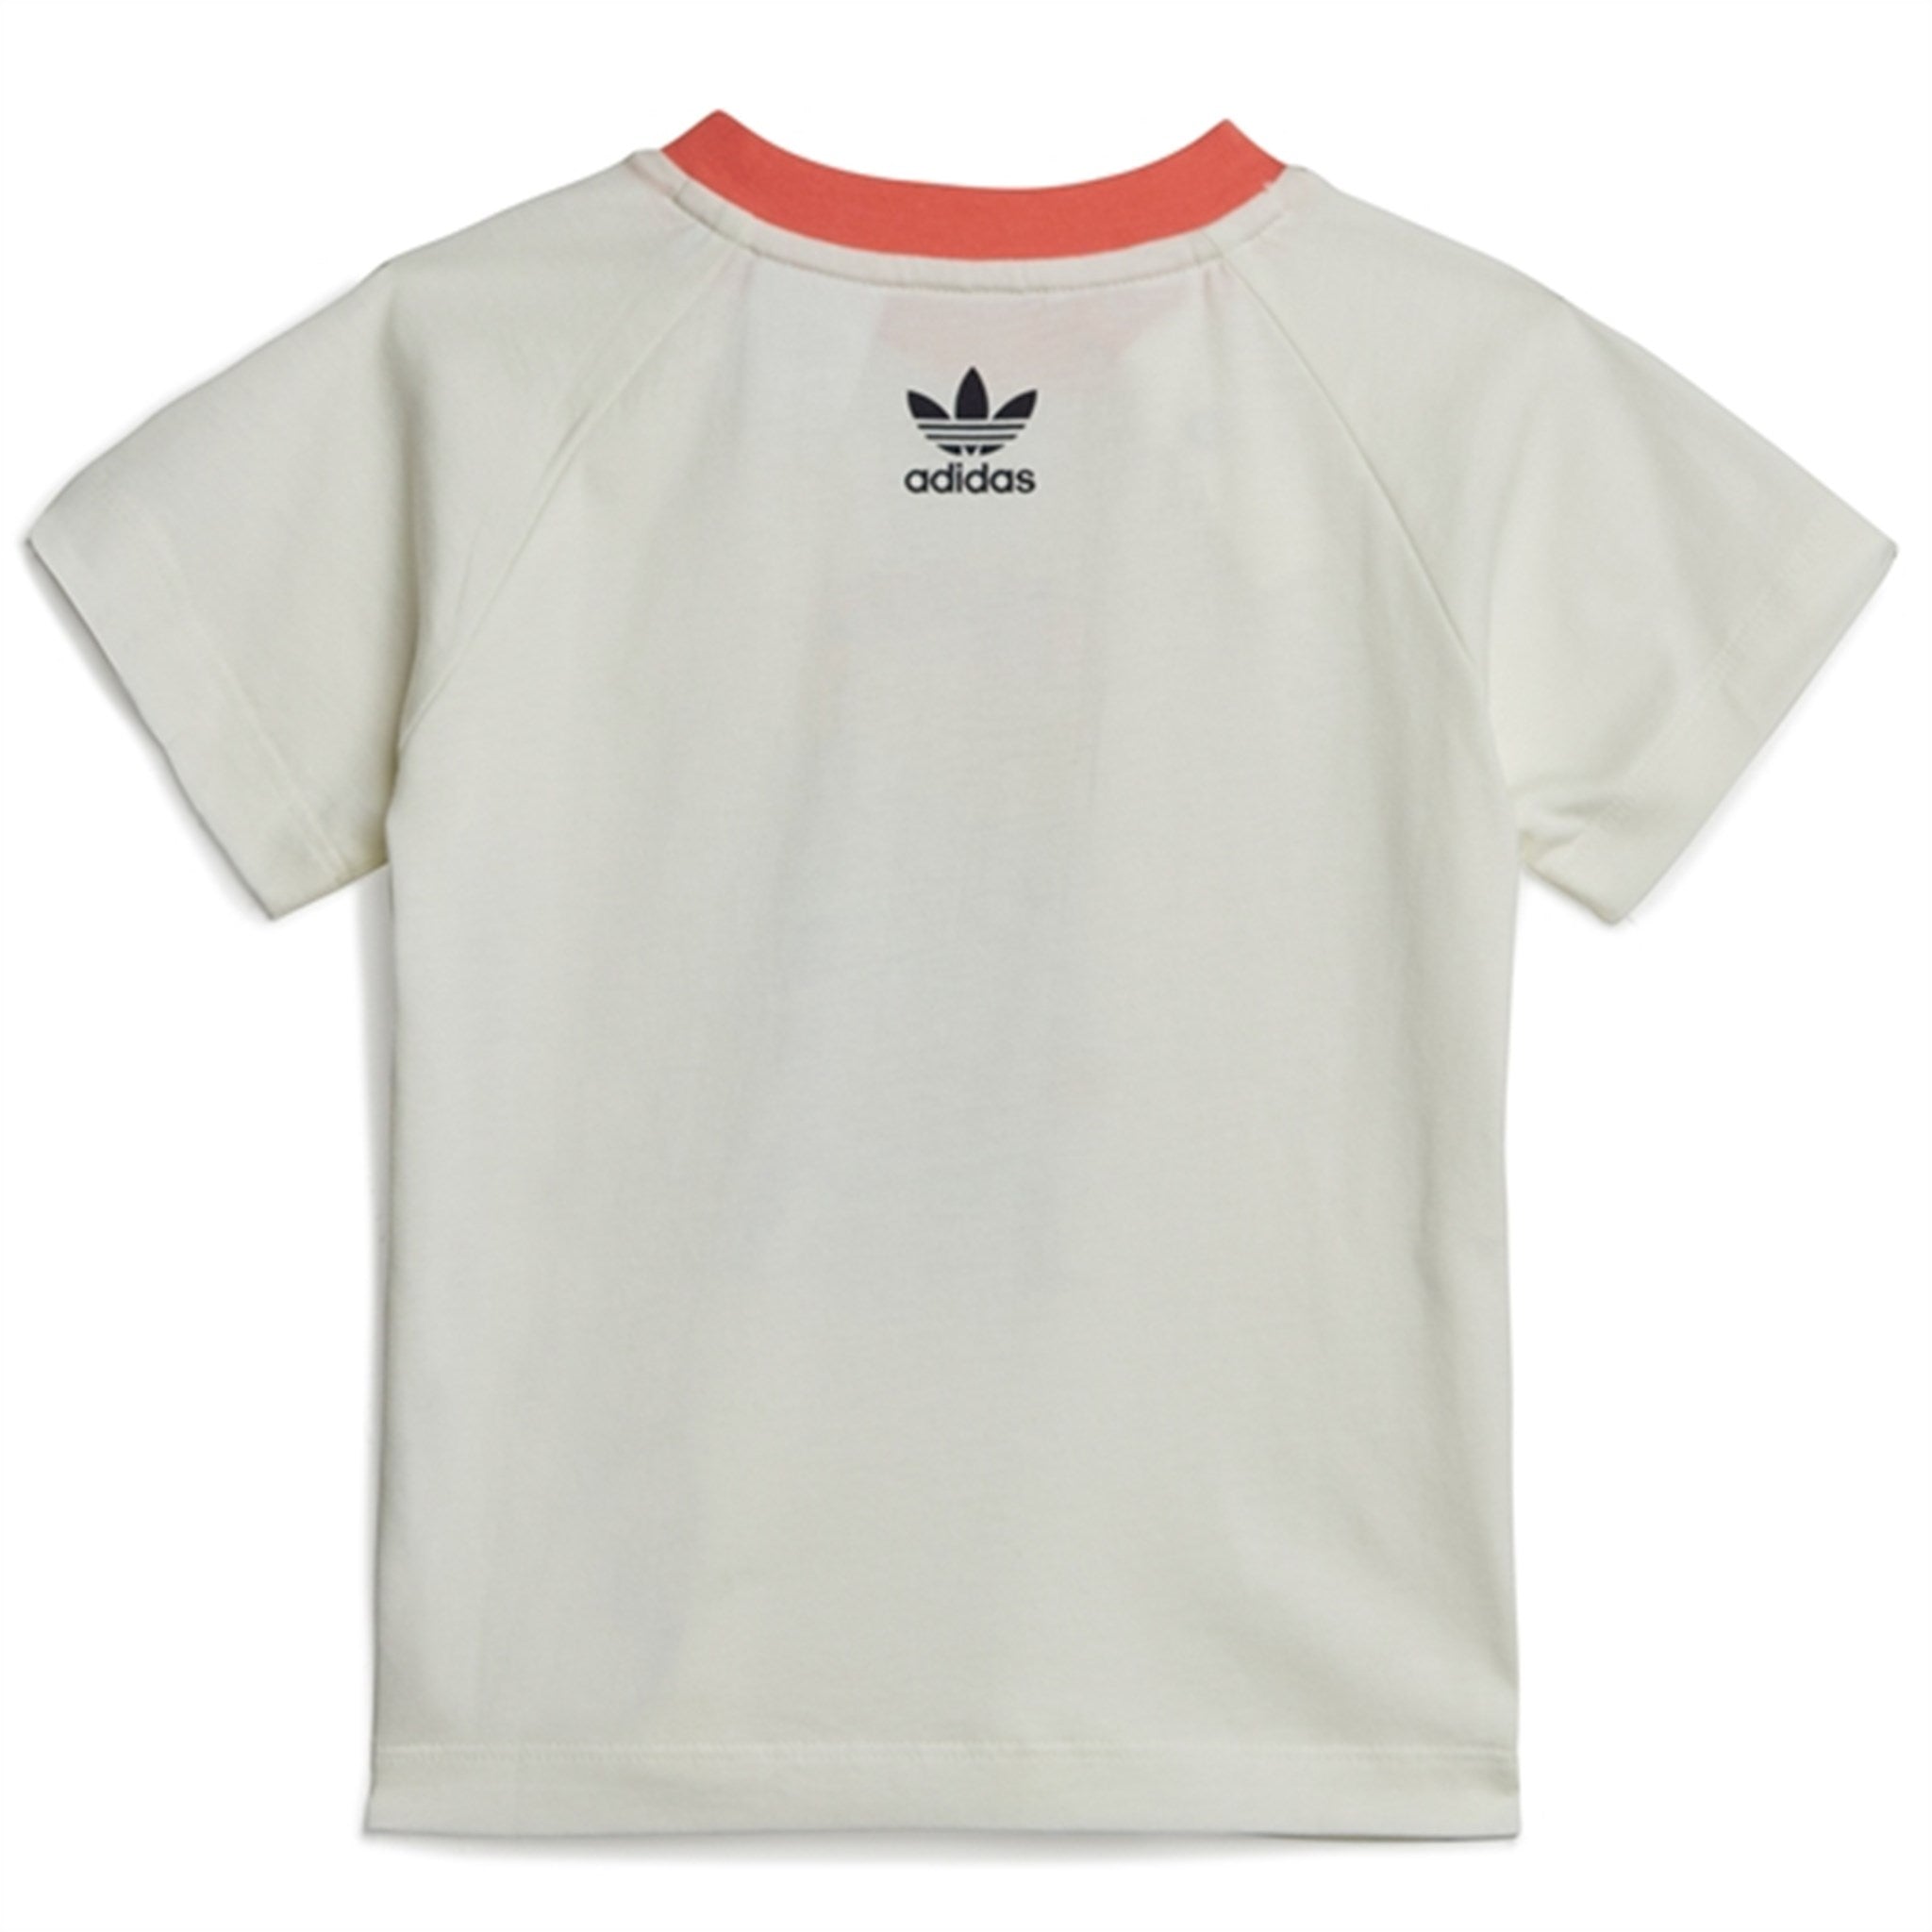 adidas Originals White T-Shirt 5